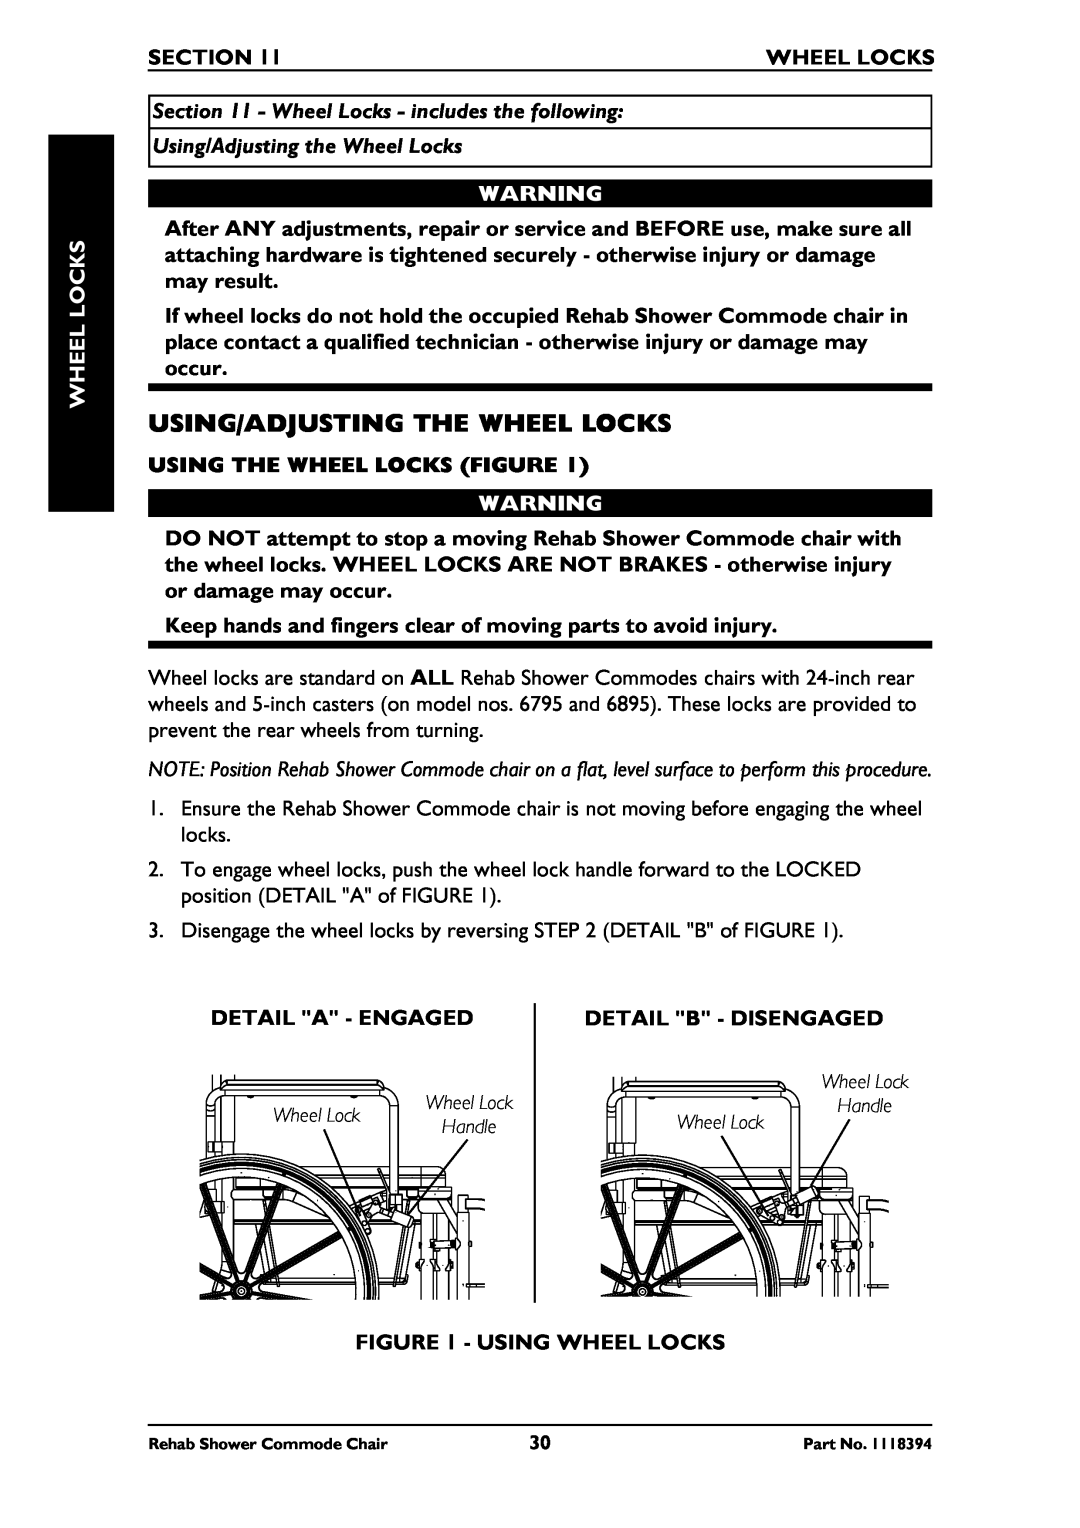 Invacare 6795 Using/Adjusting The Wheel Locks, Section, Wheel Locks - includes the following, Using The Wheel Locks Figure 